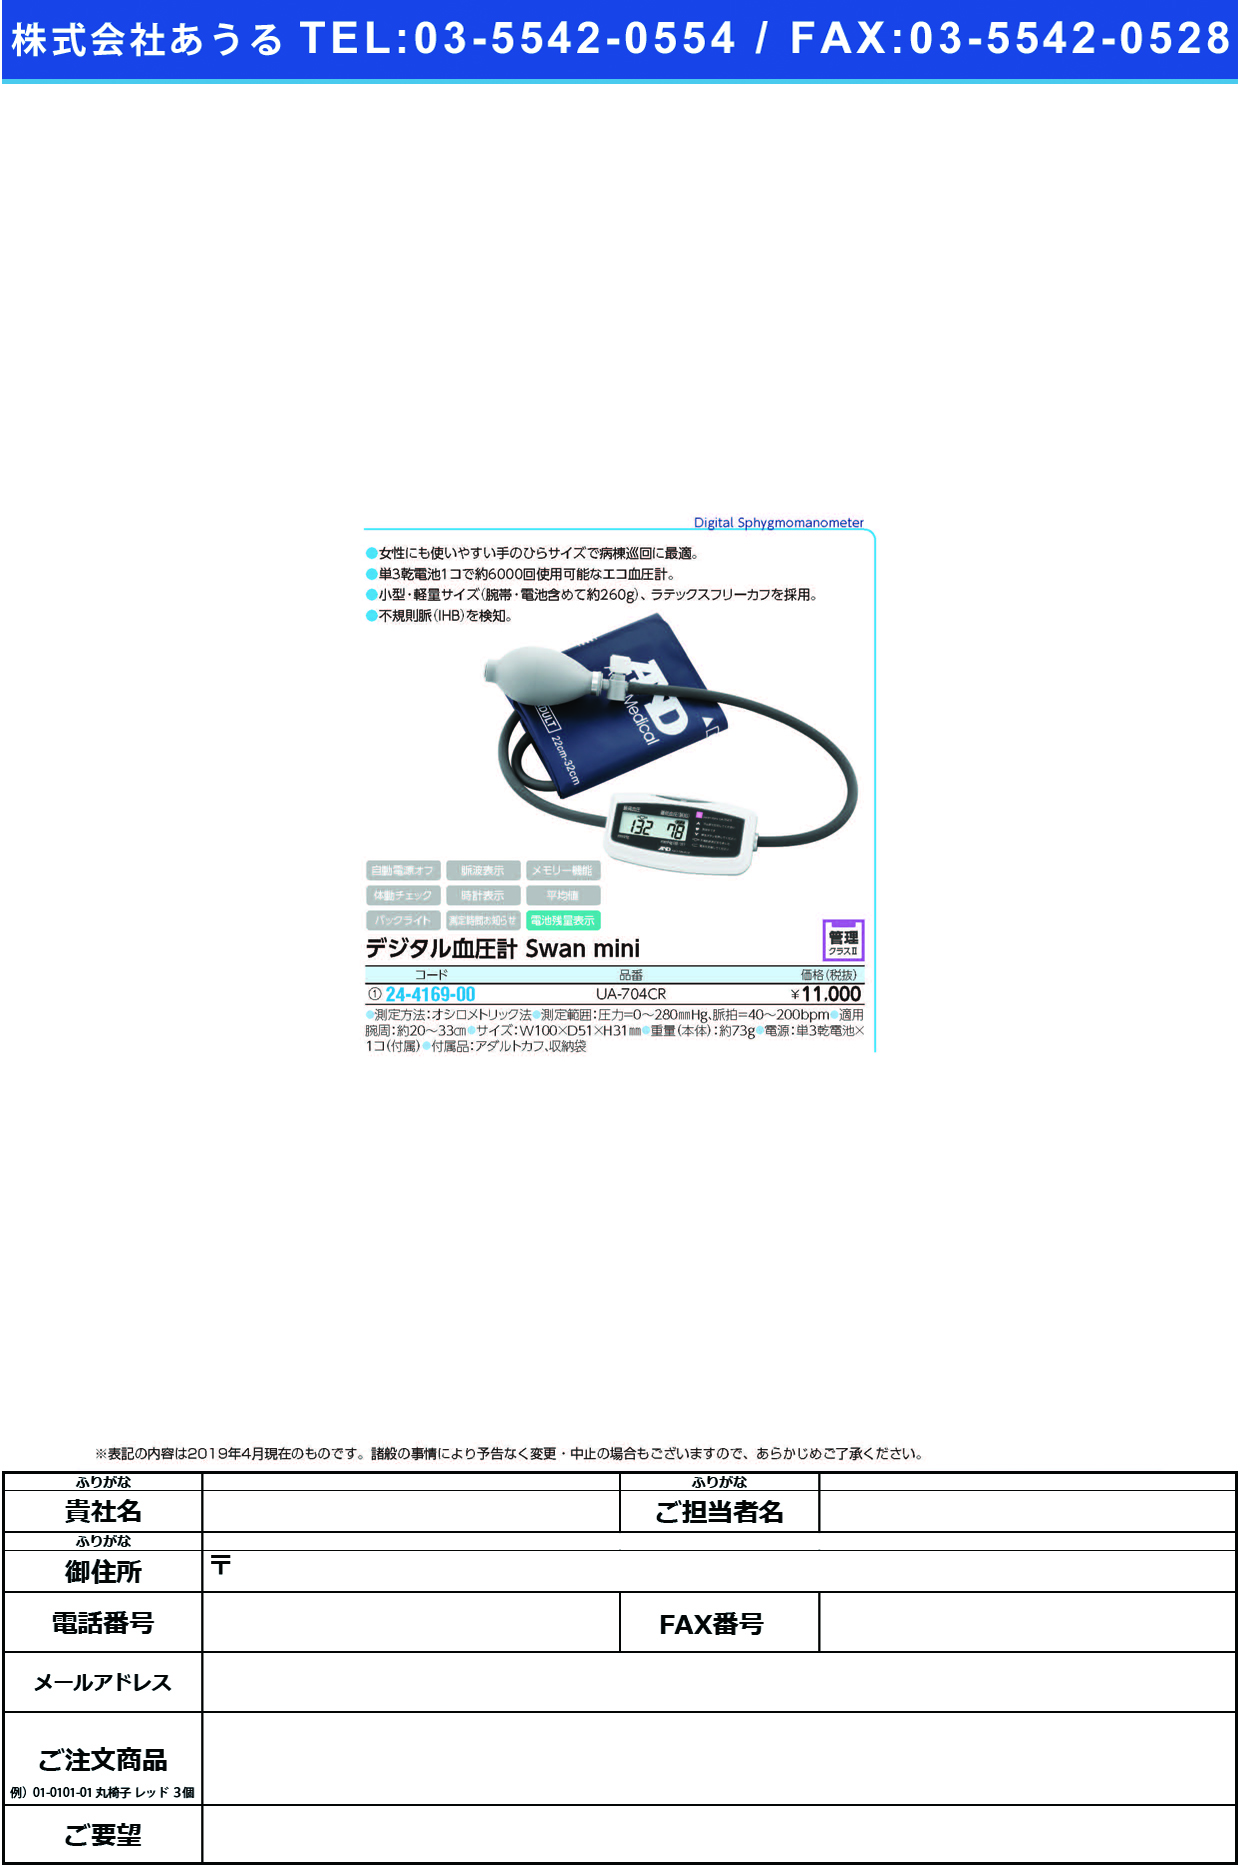 (24-4169-00)デジタル血圧計Ｓｗａｎｍｉｎｉ UA-704CR ﾃﾞｼﾞﾀﾙｹﾂｱﾂｹｲSWANMINI(エー・アンド・デイ)【1台単位】【2019年カタログ商品】